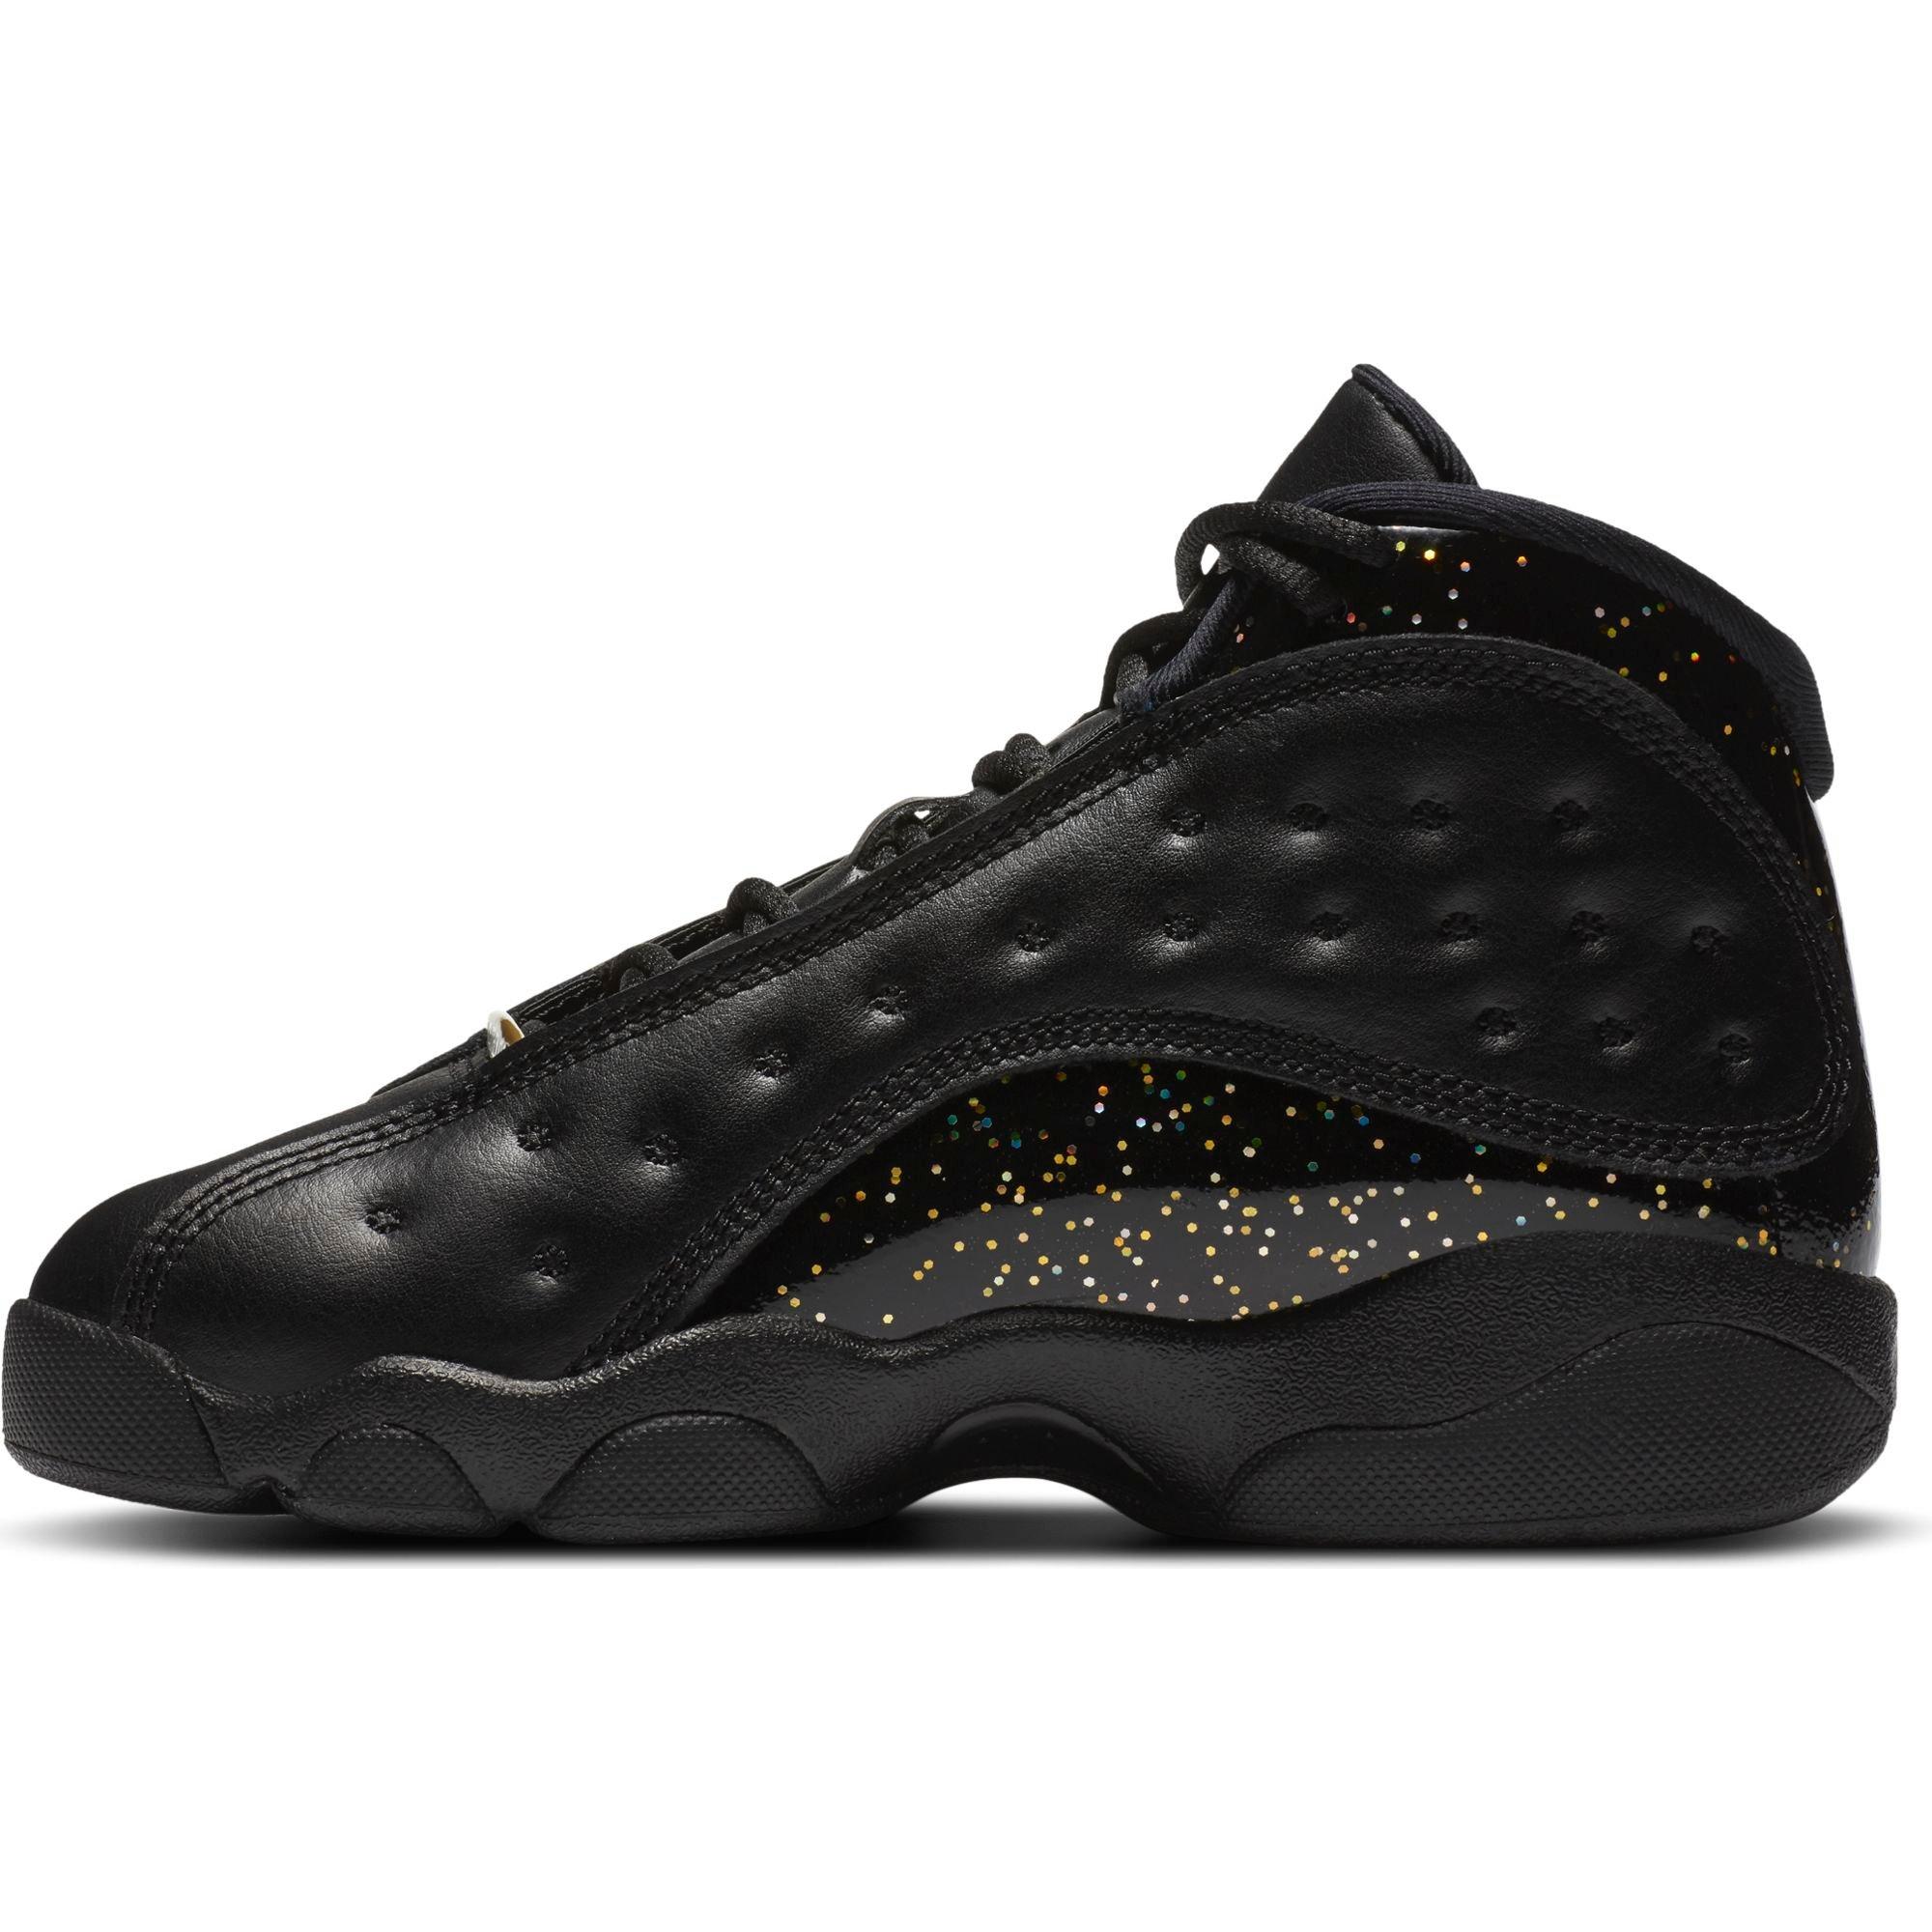 Sneakers Release – Jordan 13 Retro 